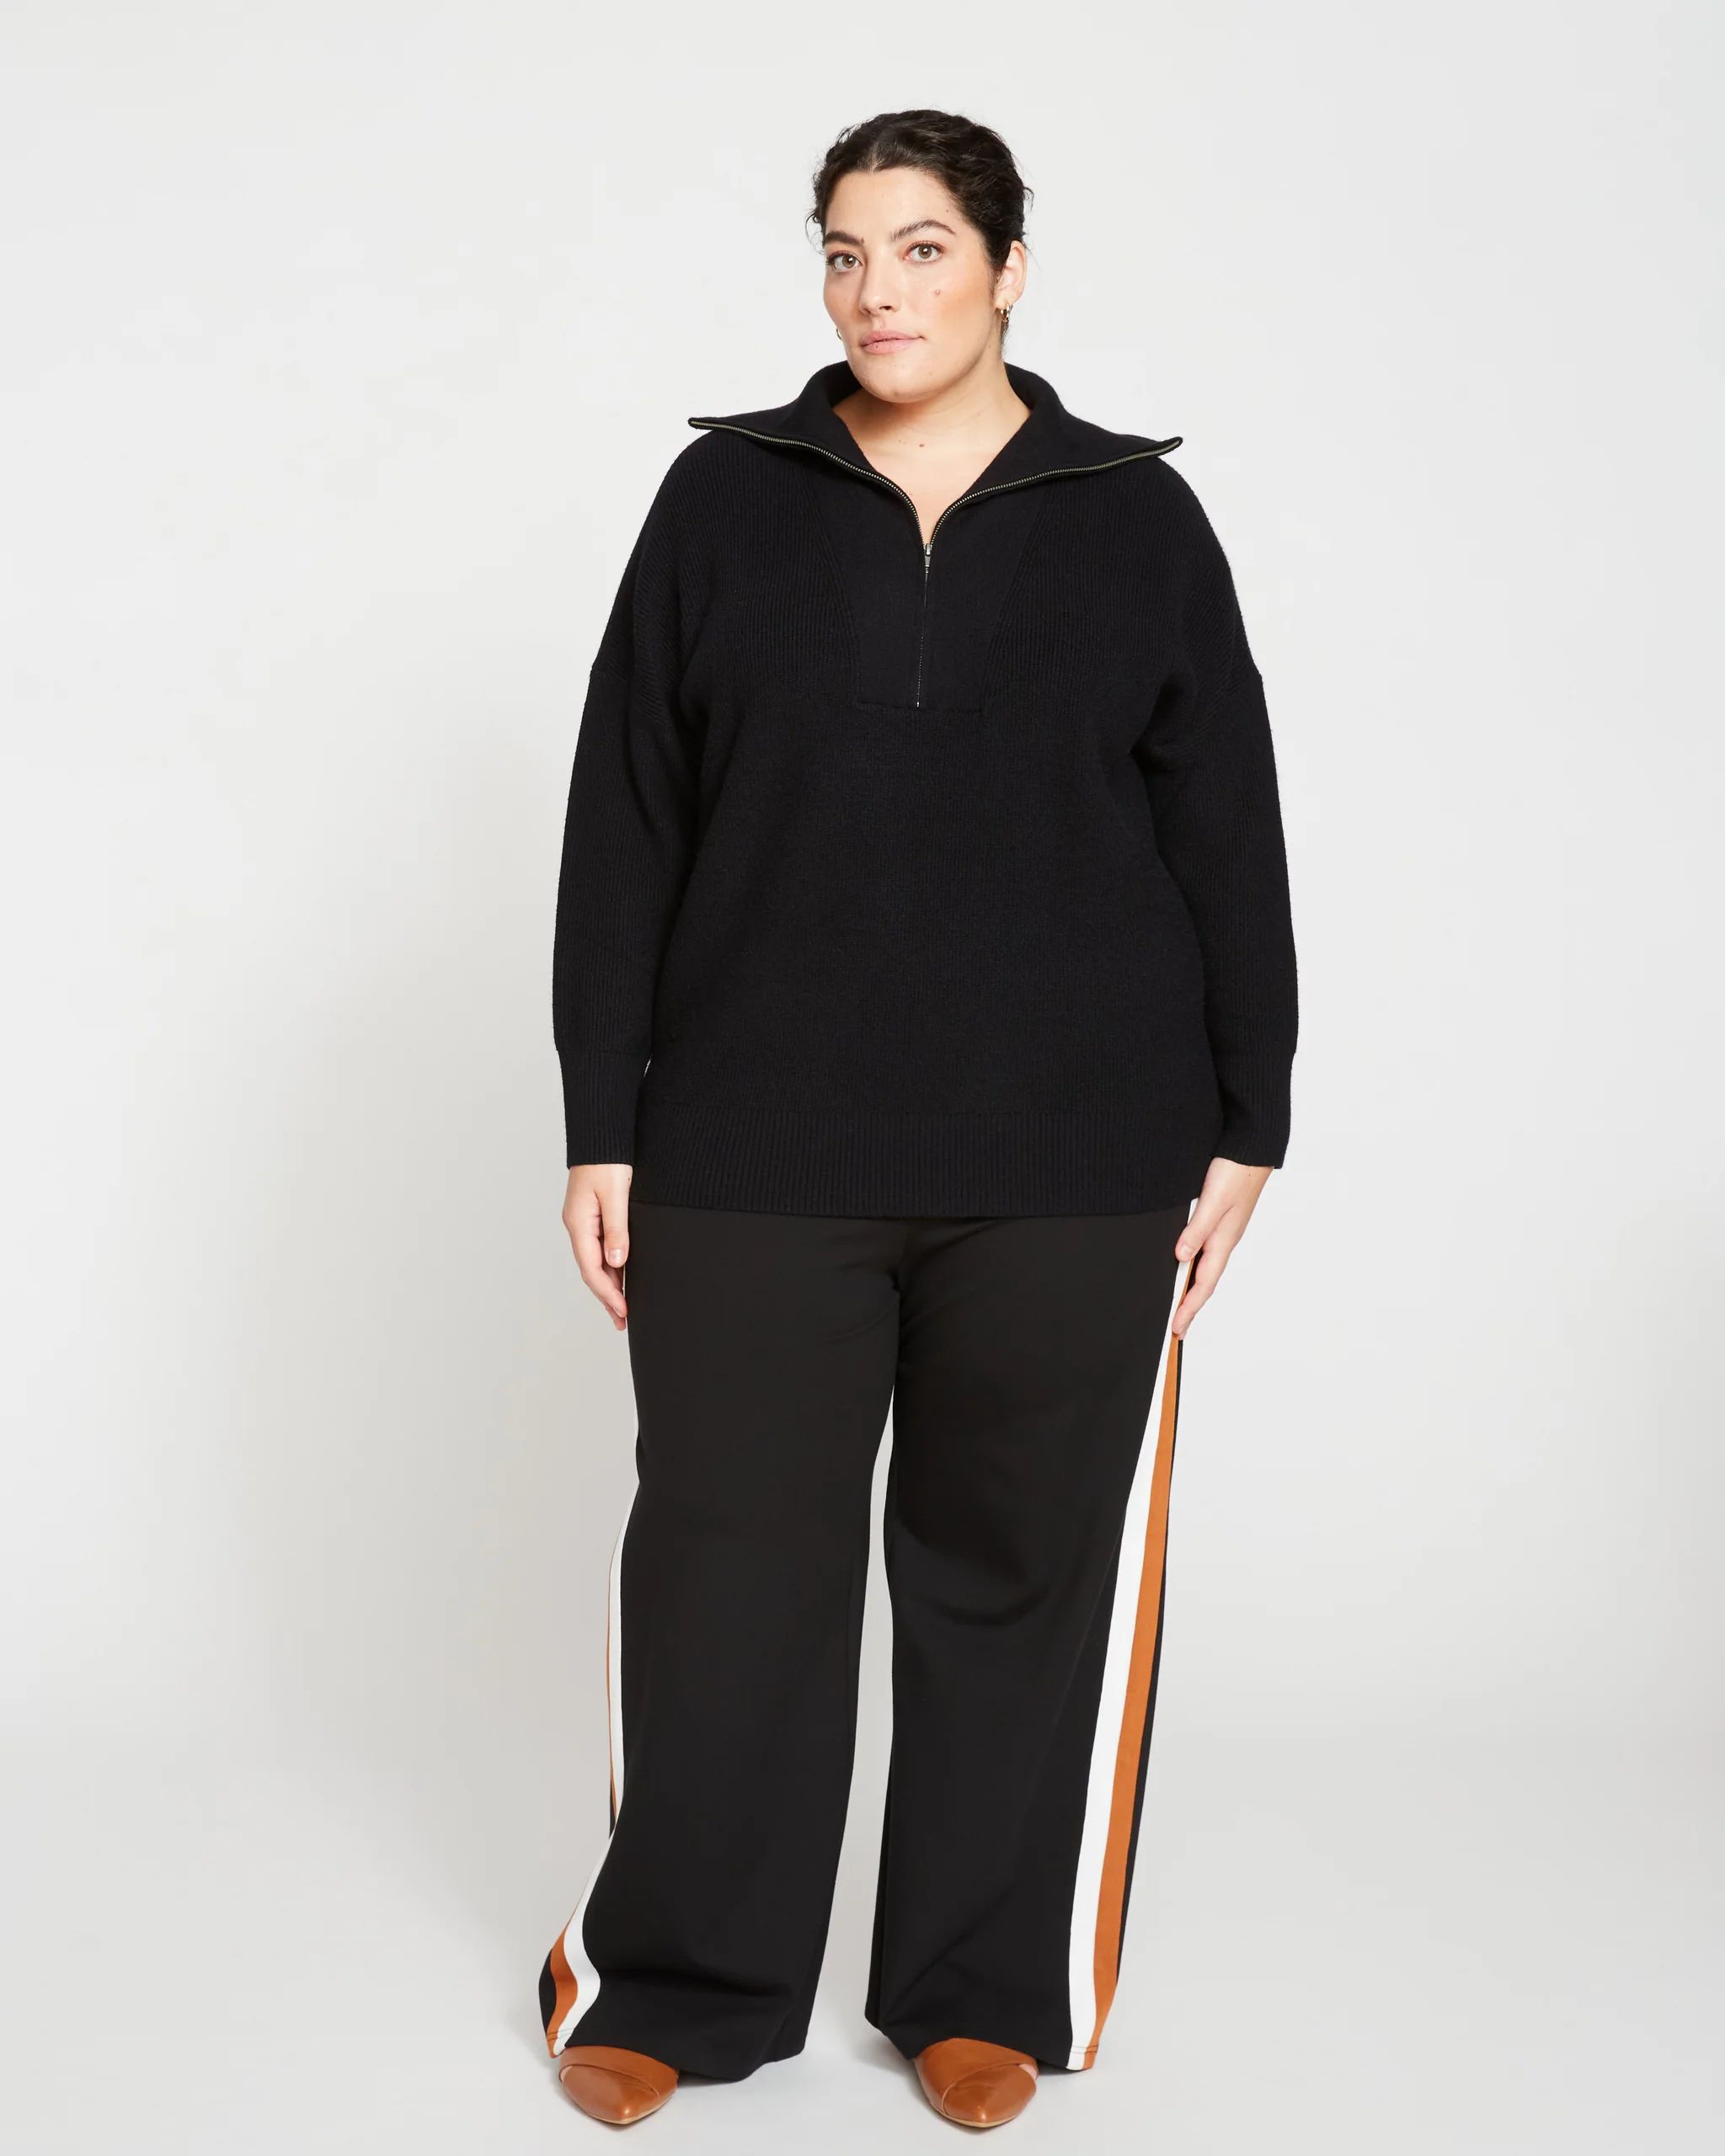 Blanket Half-Zip Sweater - Black | Universal Standard